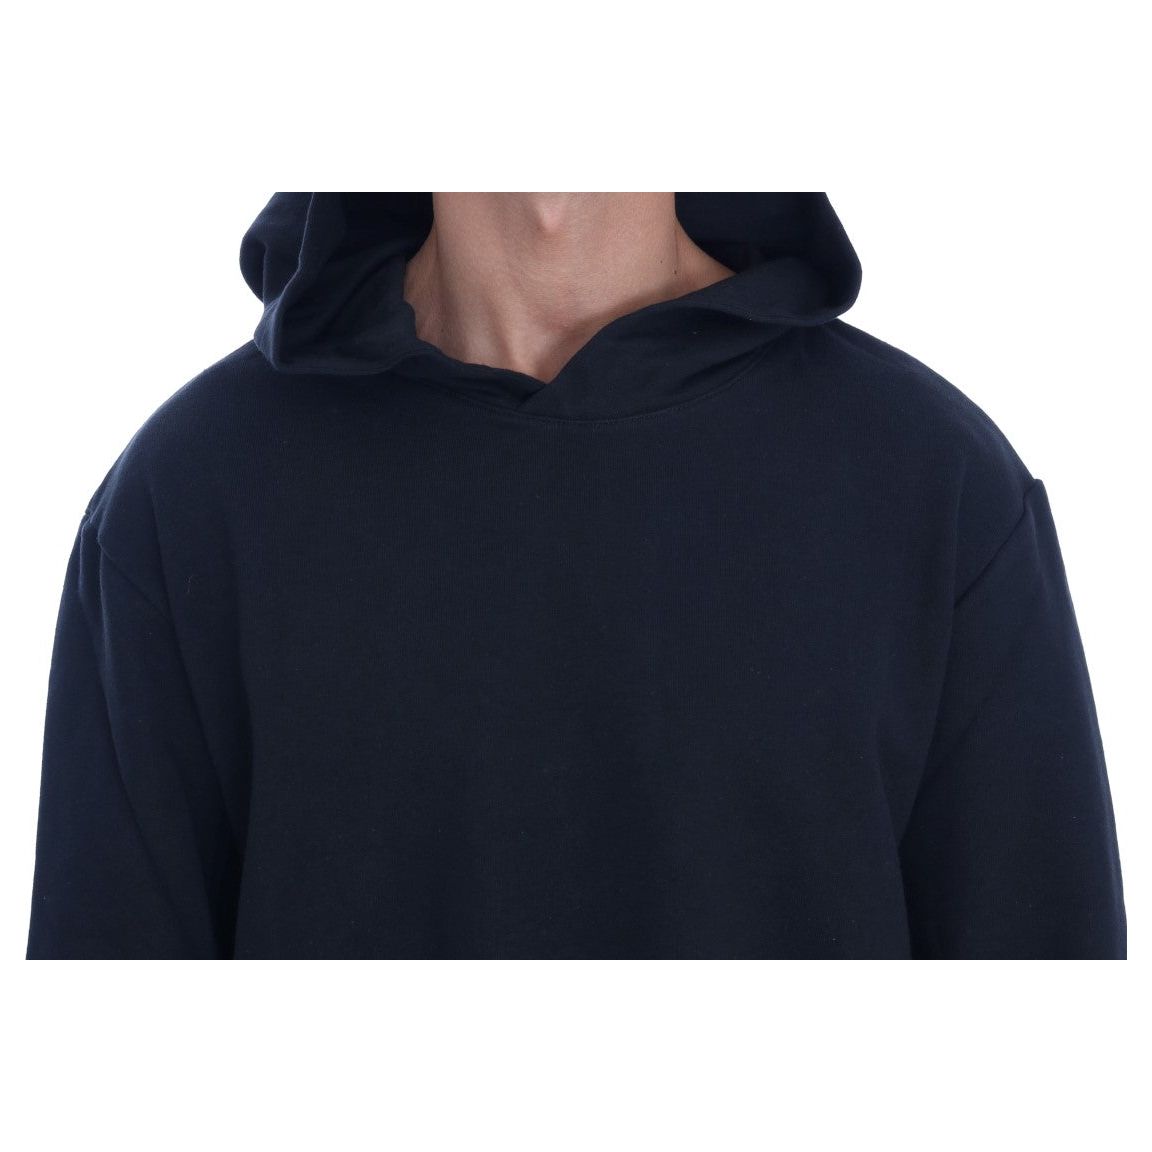 Daniele Alessandrini Elegant Black Cotton Hooded Sweater black-gym-casual-hooded-cotton-sweater 457508-black-gym-casual-hooded-cotton-sweater-3.jpg